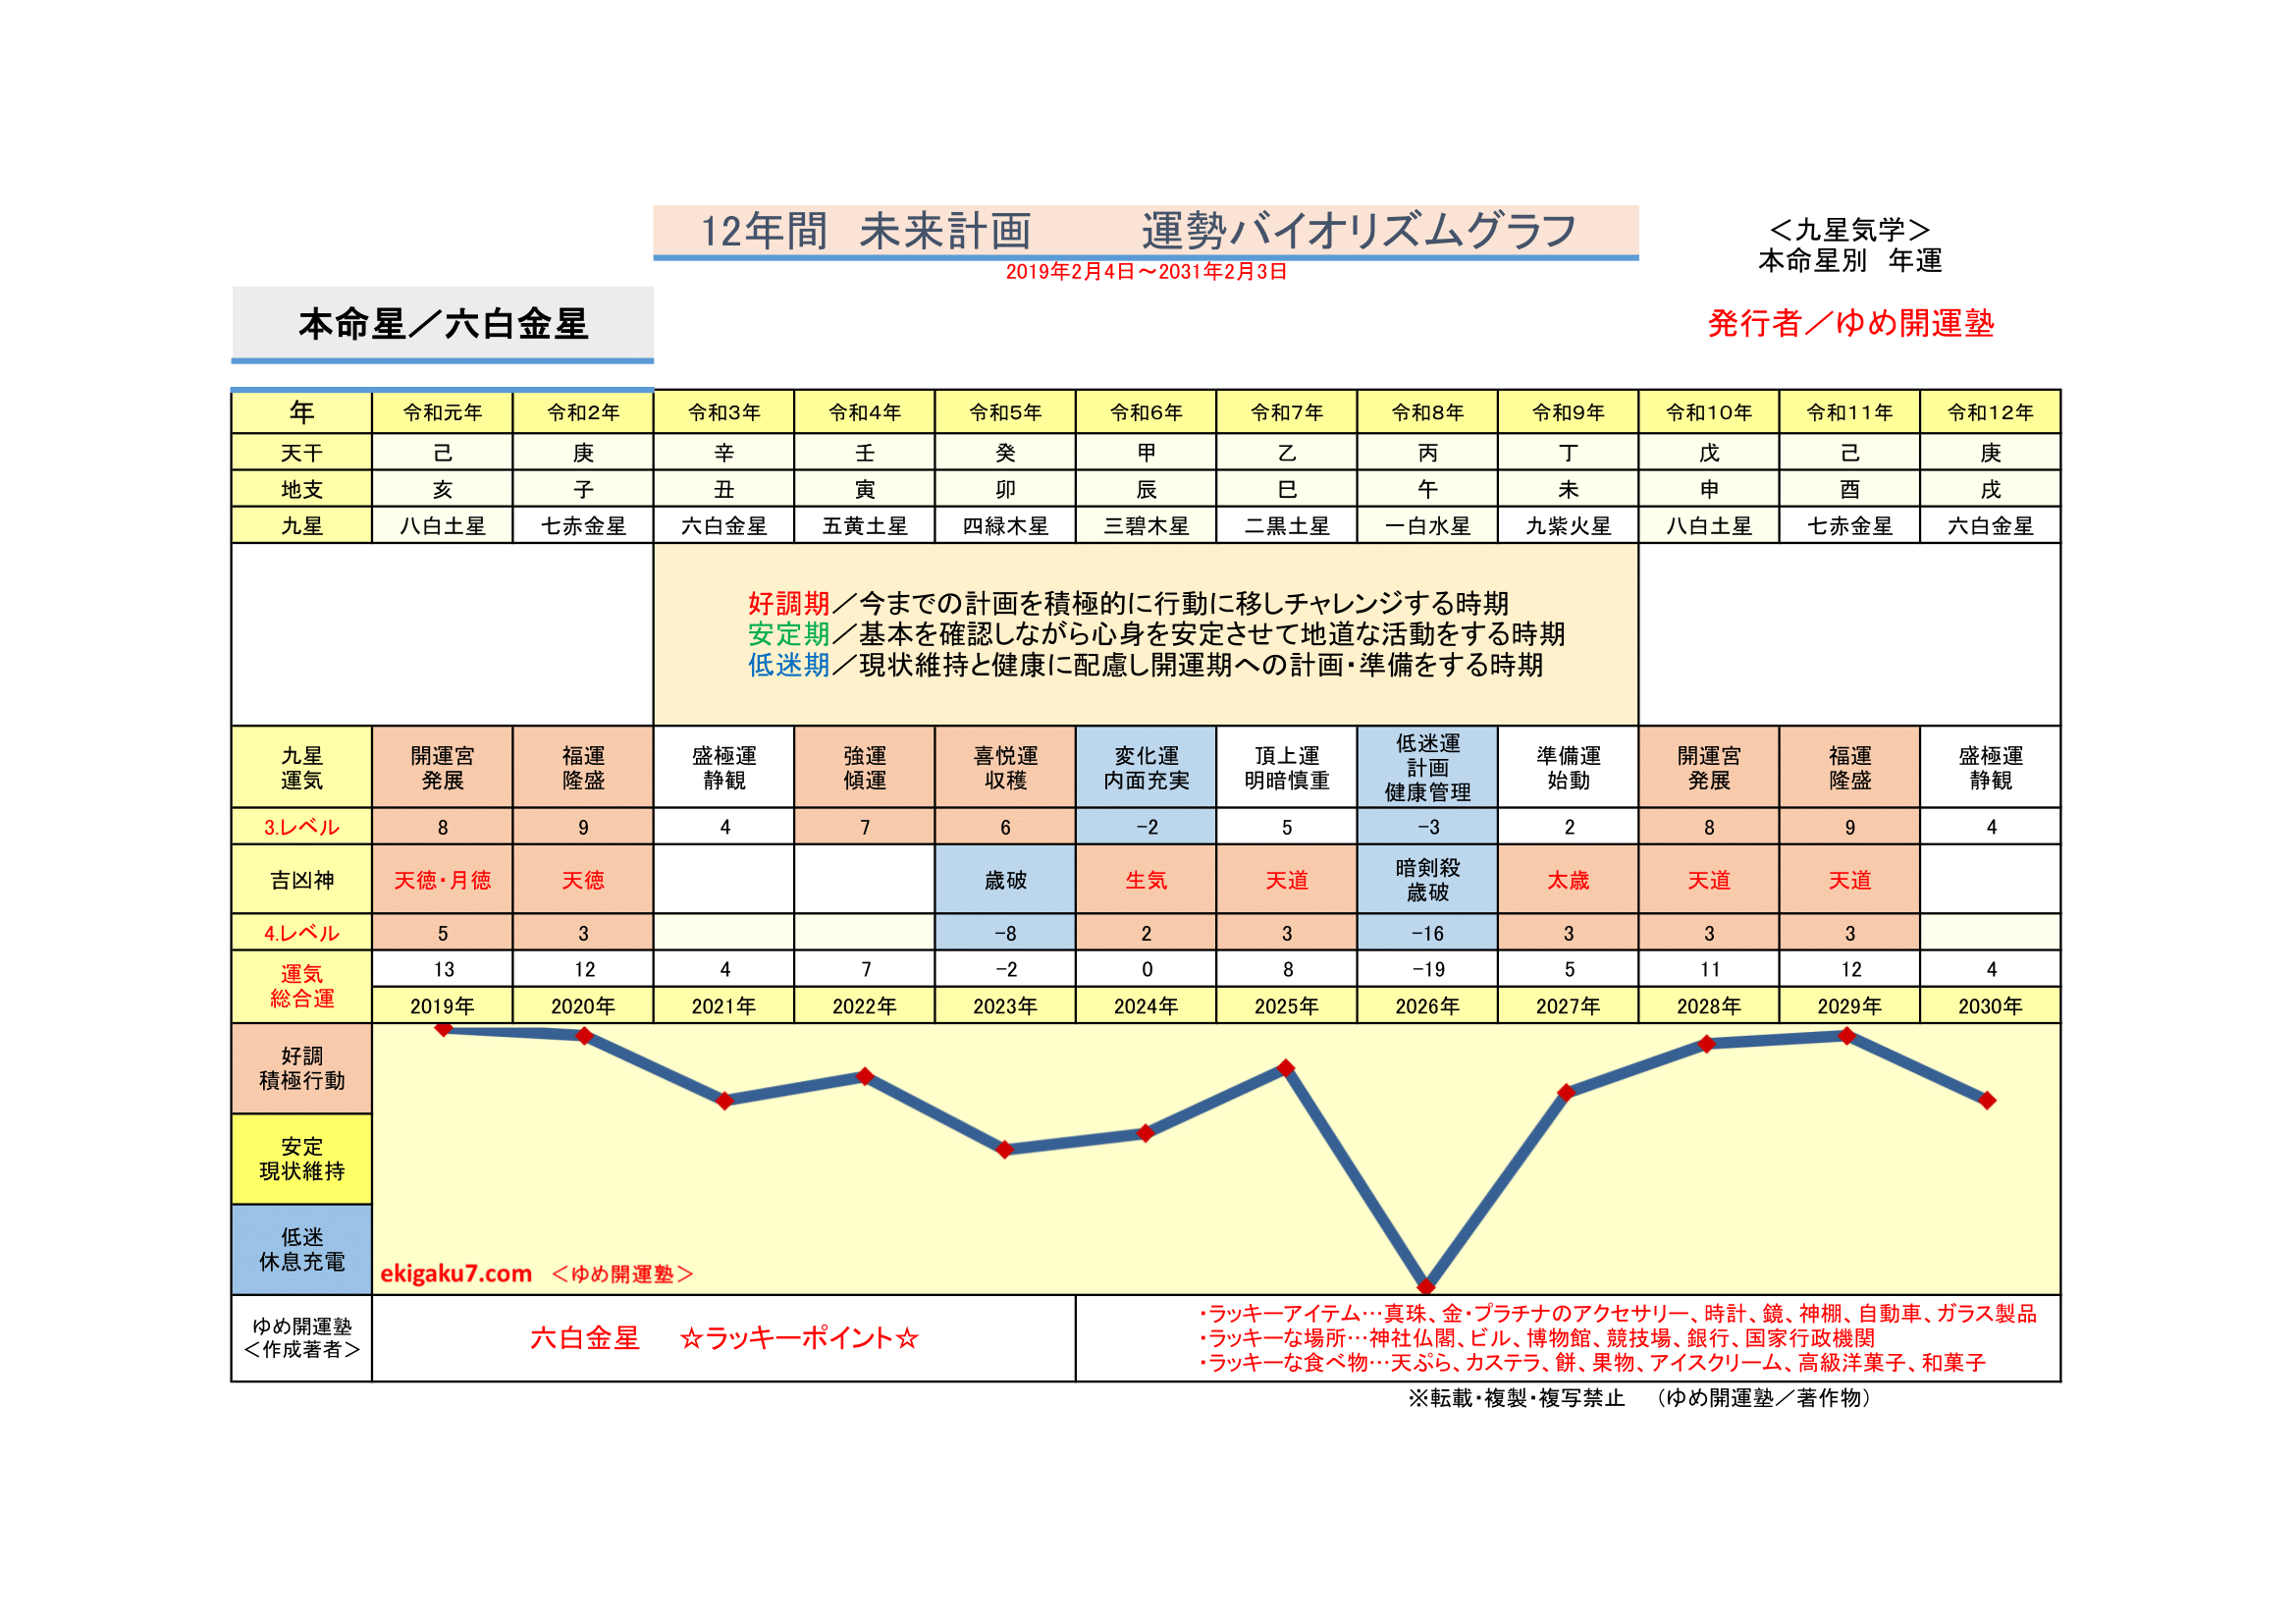 6 六白金星 運勢開運グラフ 運勢開運バイオリズムグラフ 新開運カレンダー